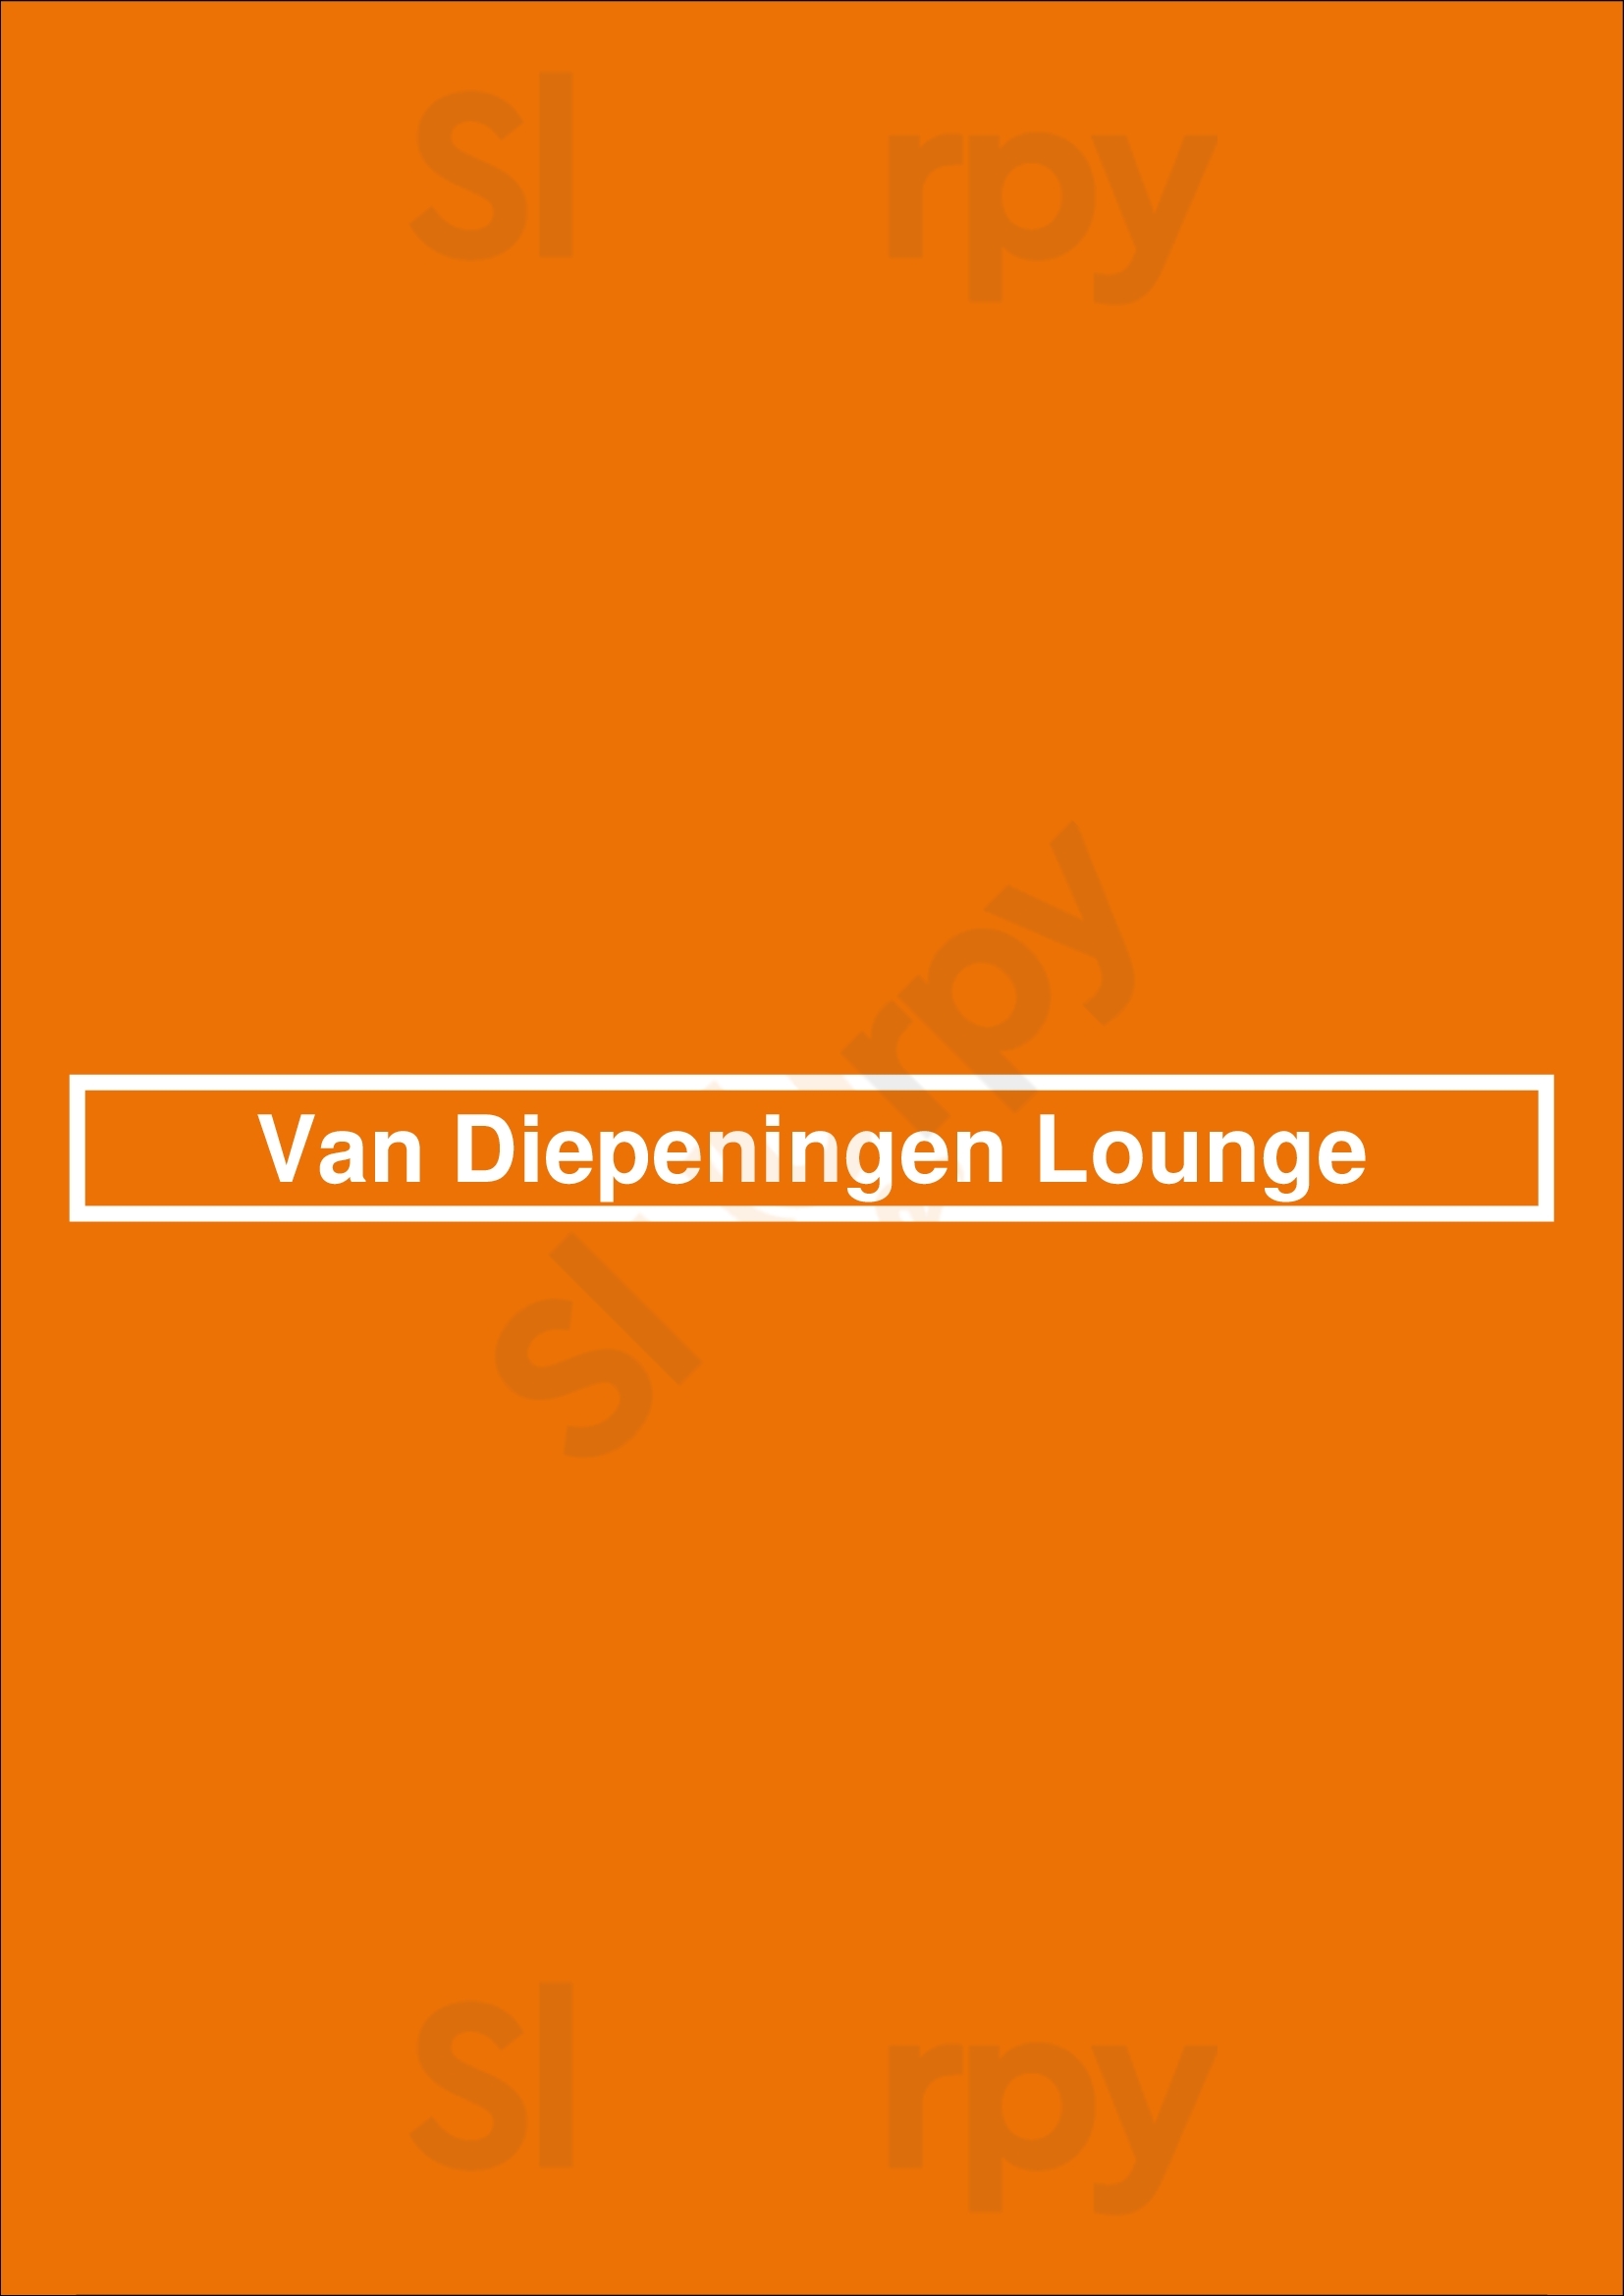 Van Diepeningen Lounge Noordwijk Menu - 1